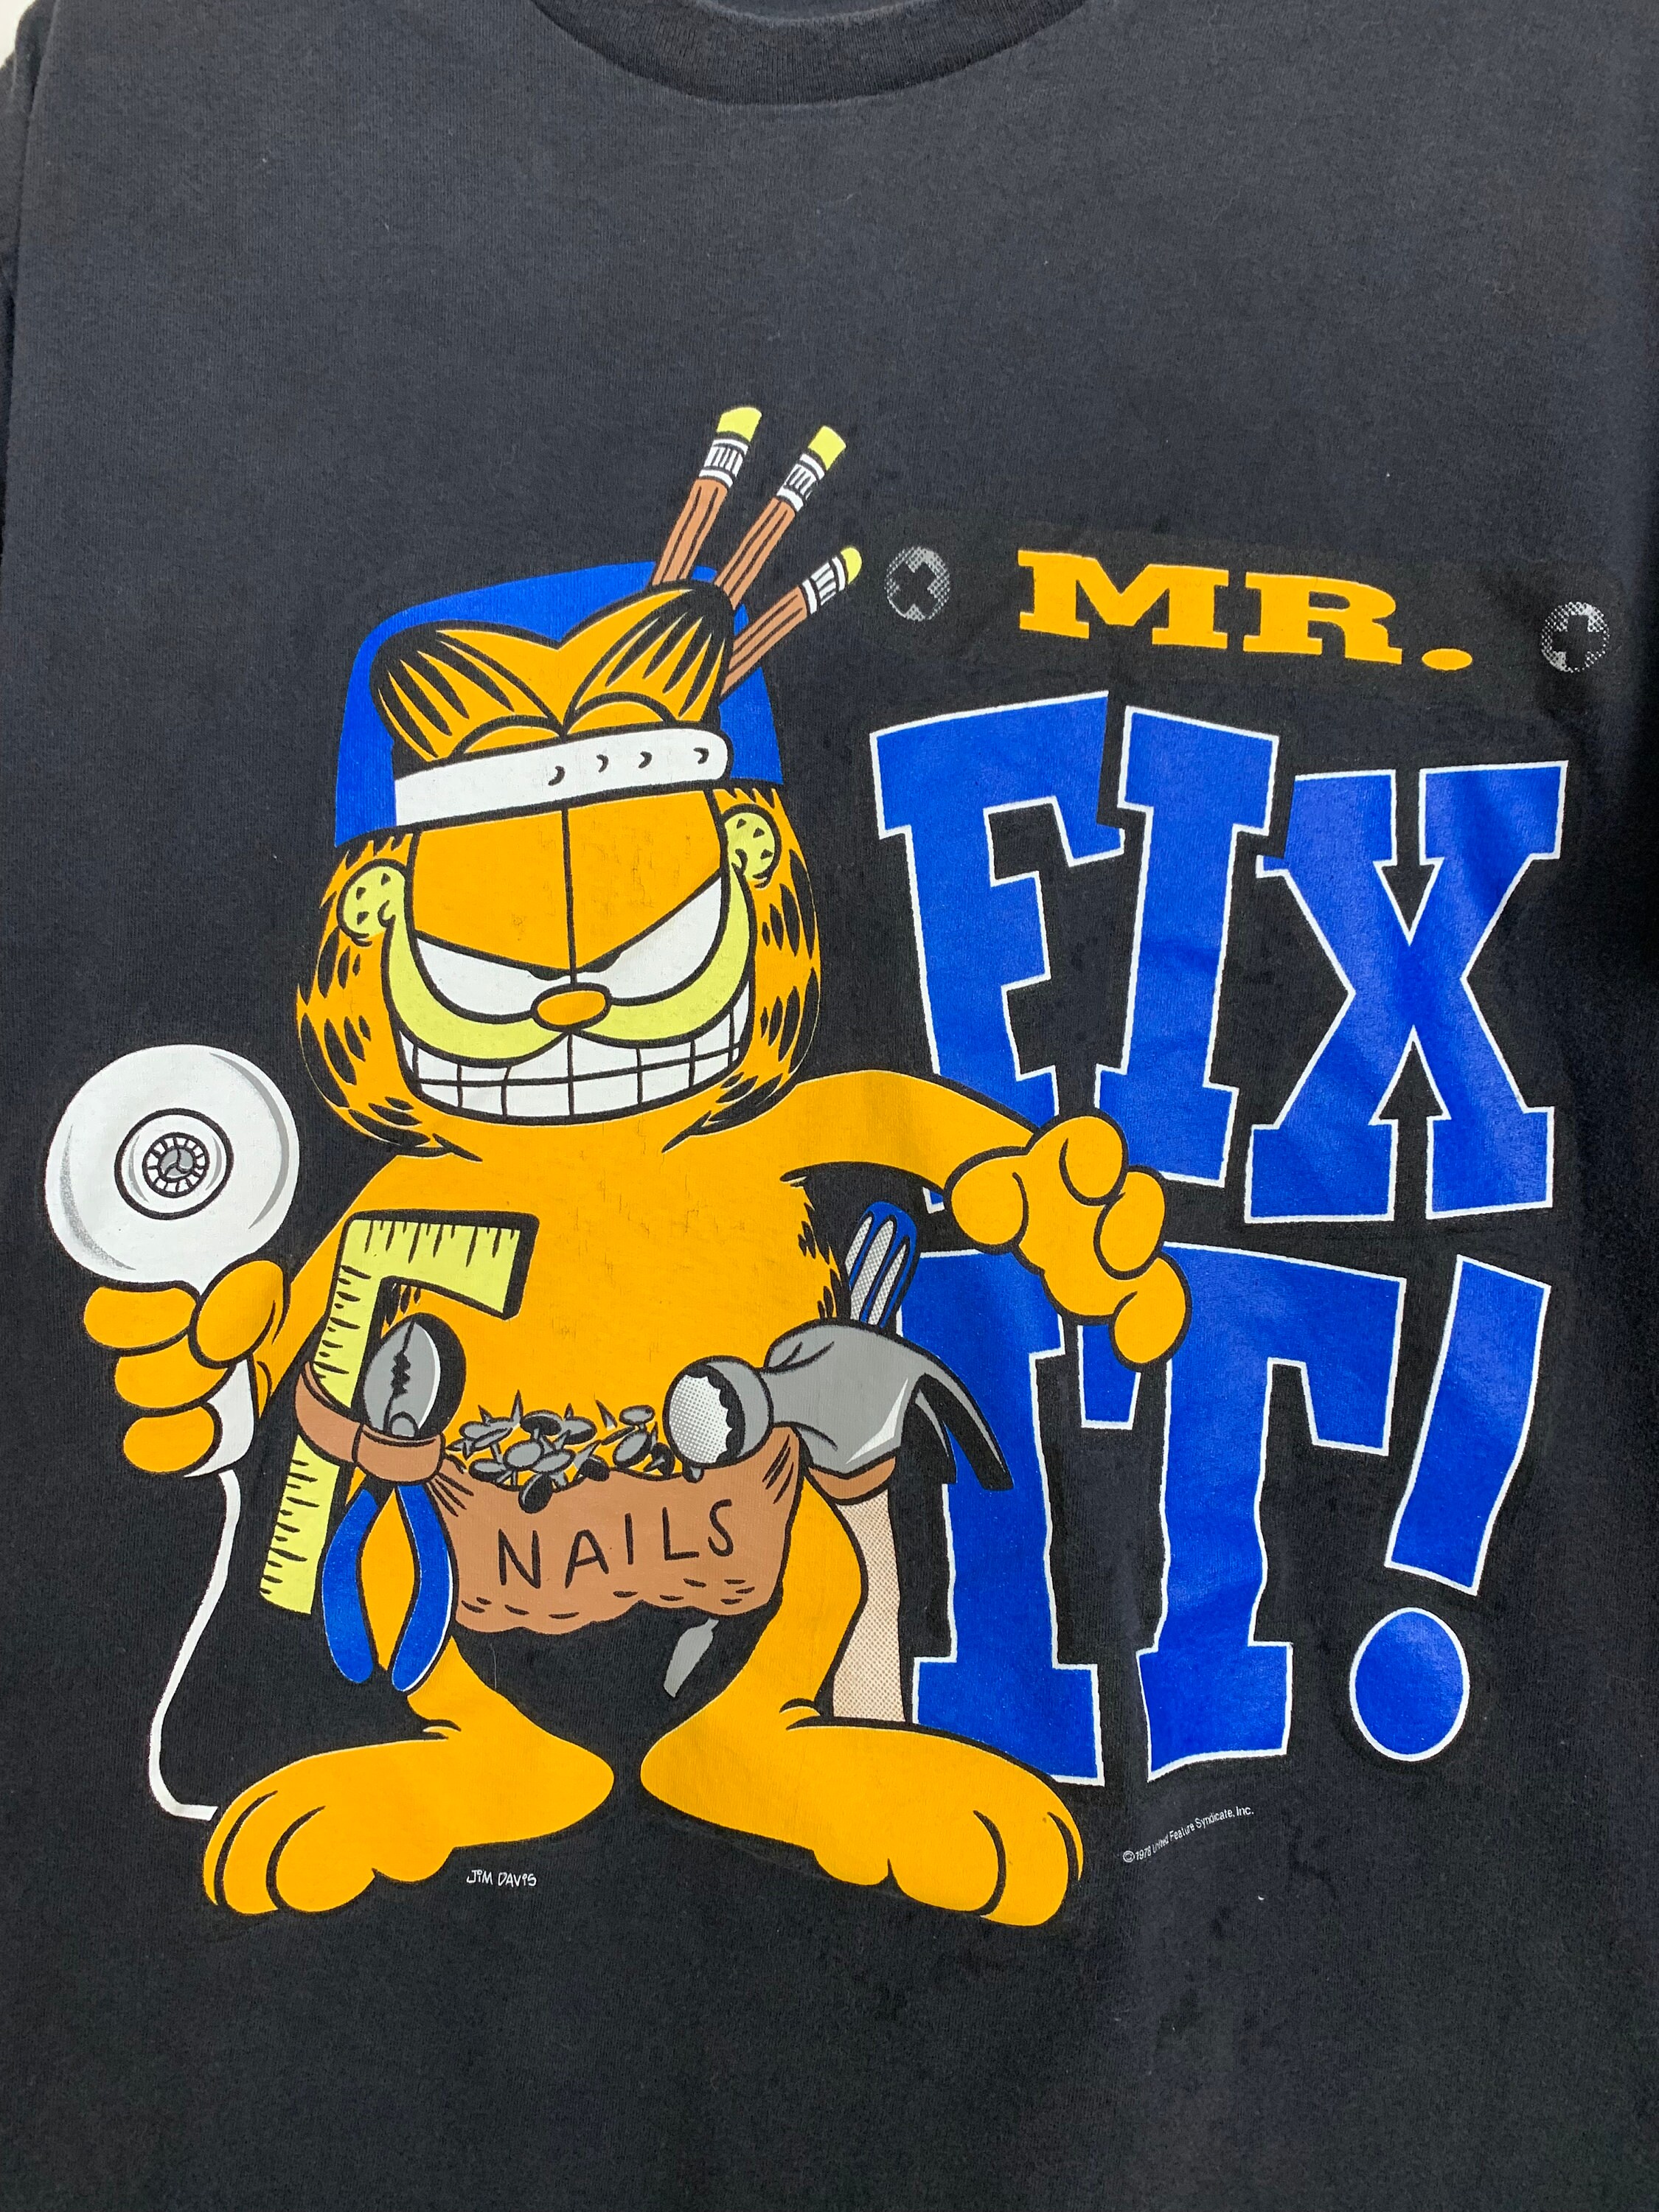 Garfield Mr. Fix It T-shirt - Etsy